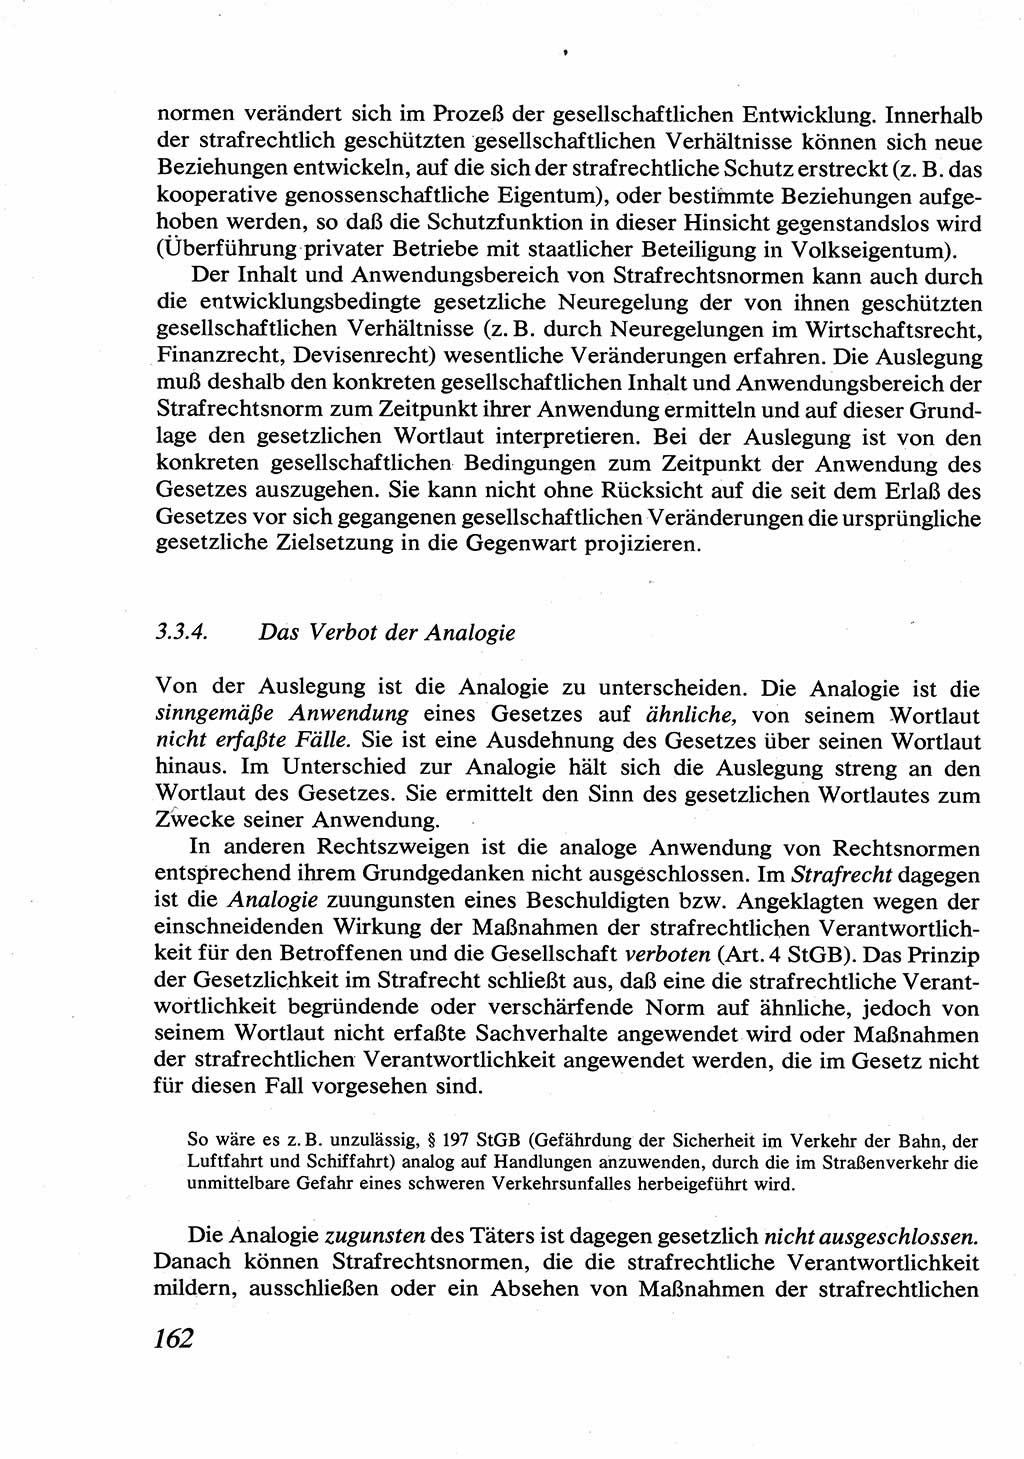 Strafrecht [Deutsche Demokratische Republik (DDR)], Allgemeiner Teil, Lehrbuch 1976, Seite 162 (Strafr. DDR AT Lb. 1976, S. 162)